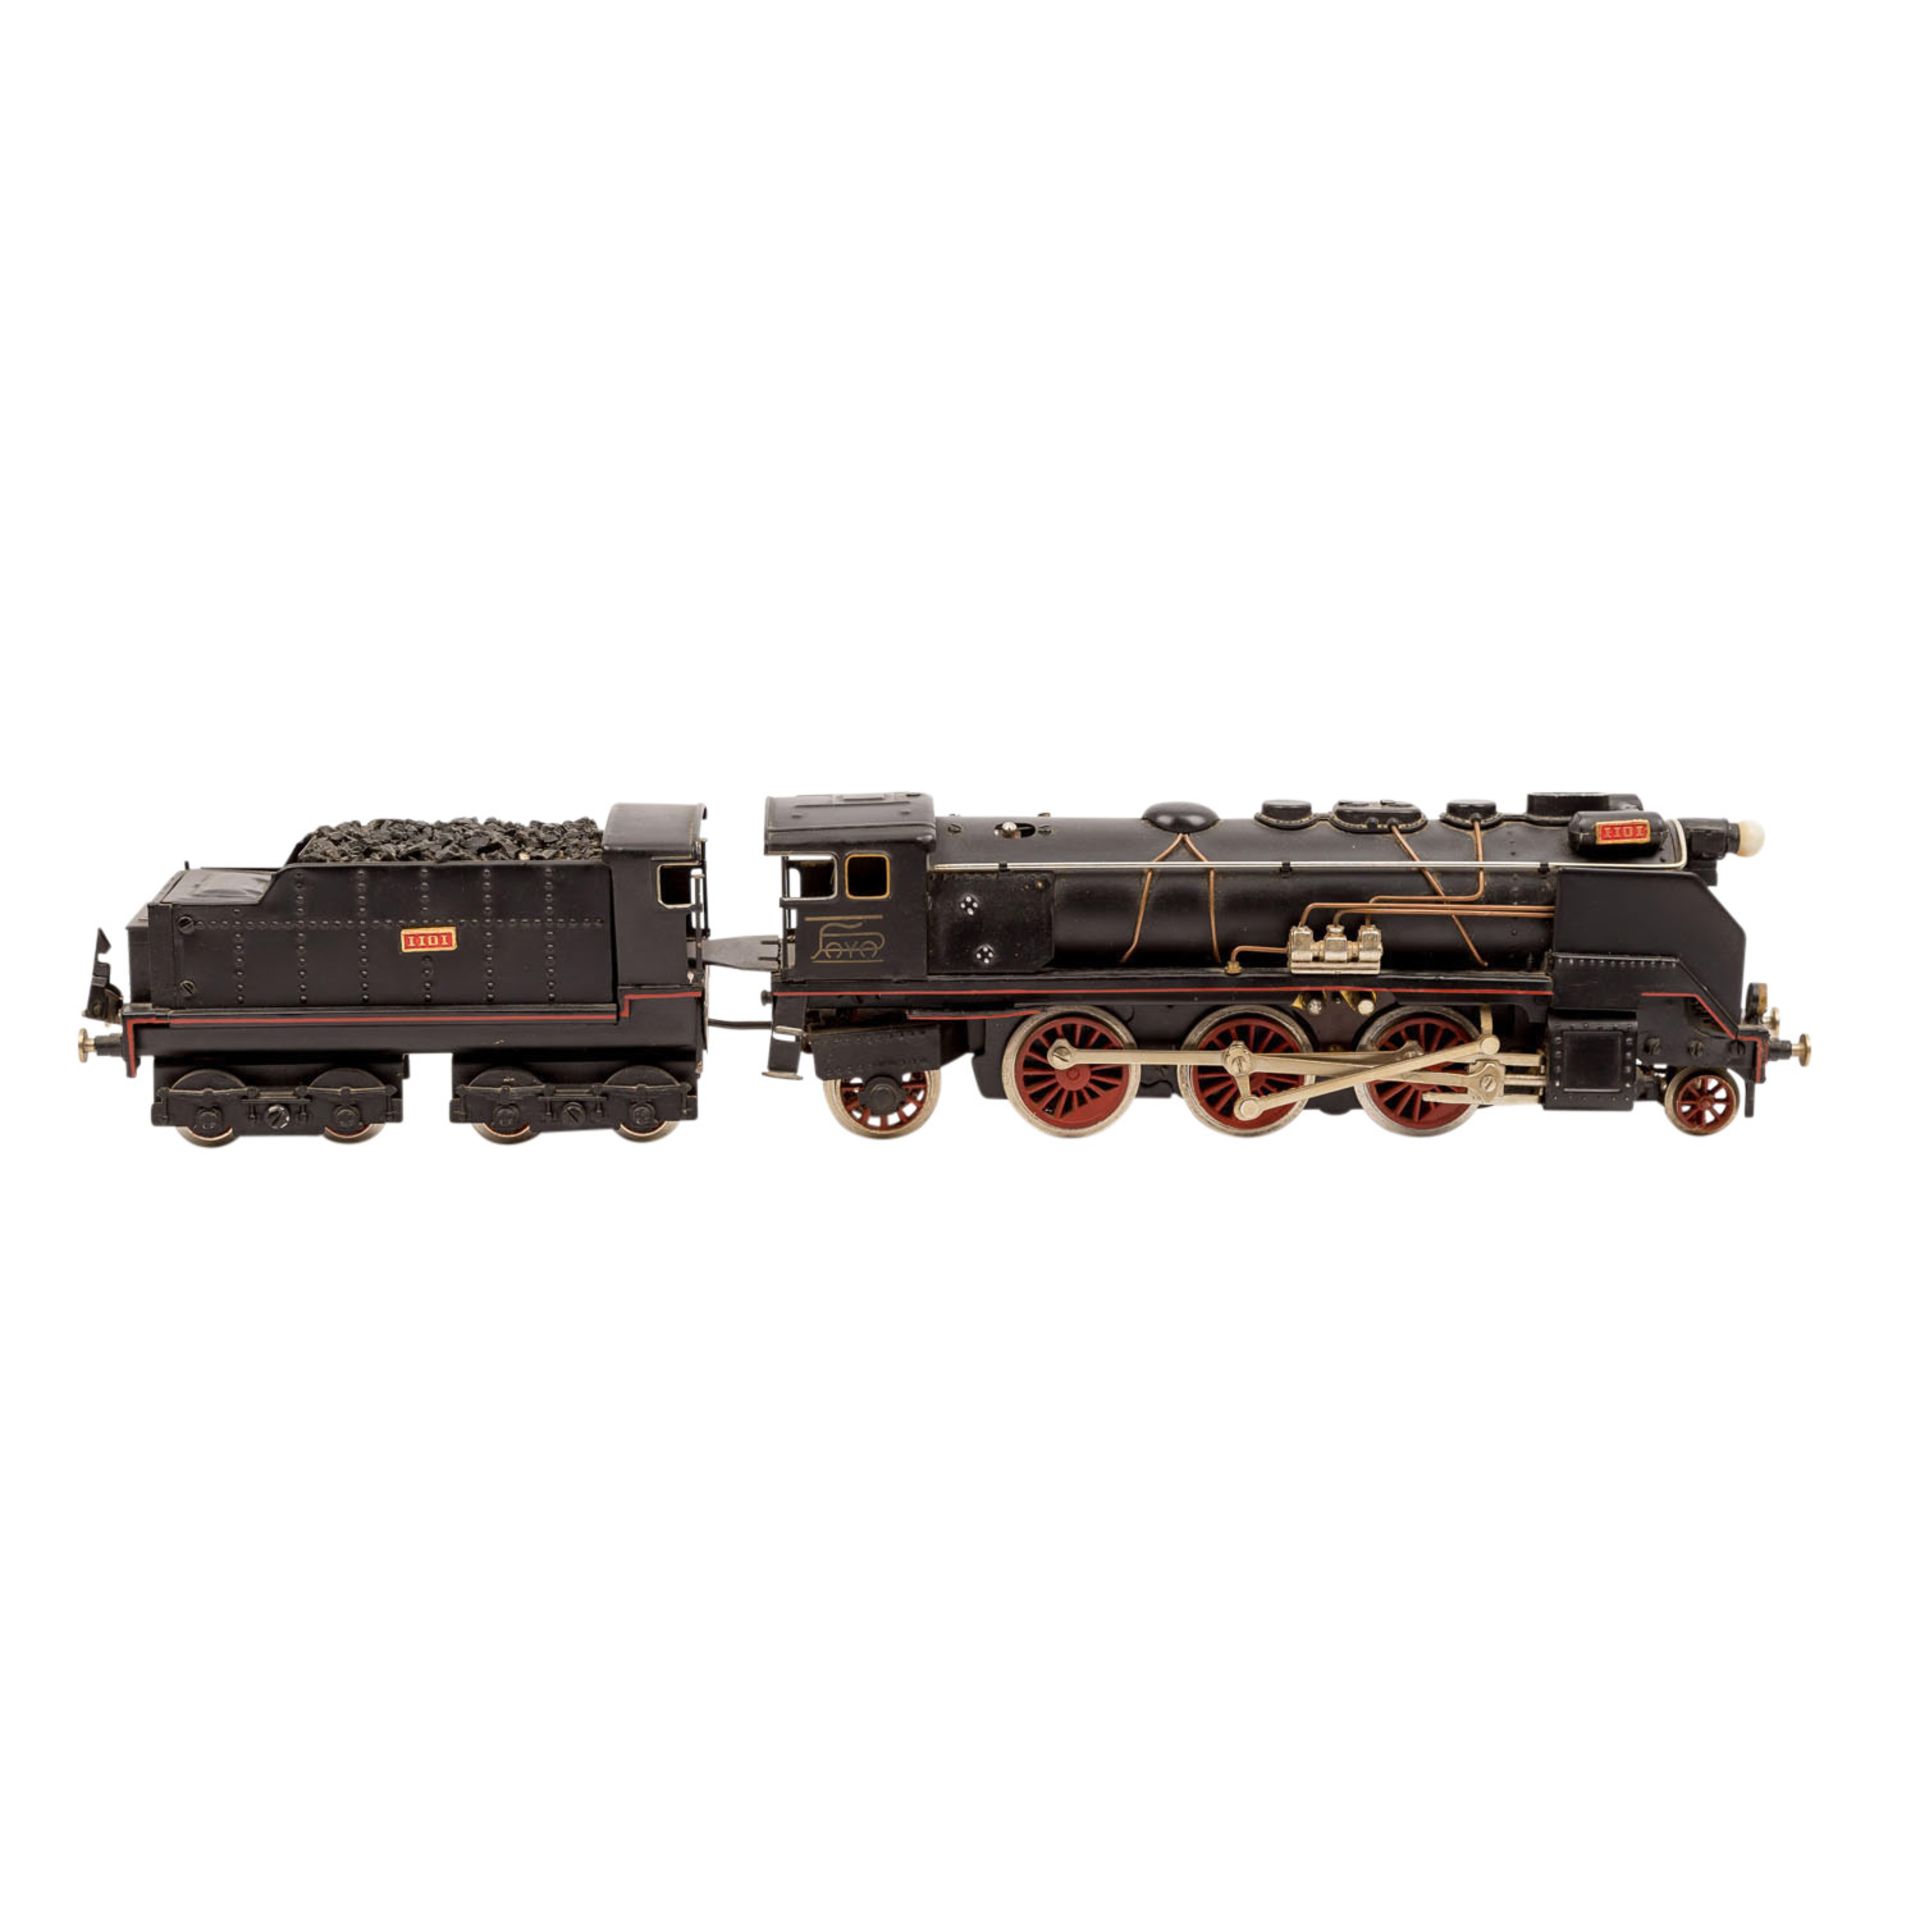 PAYA Dampflokomotive mit zwei Personenwagen, Spur 0,amerikanische Dampflok 1101 mit Tender, schwarze - Bild 3 aus 5